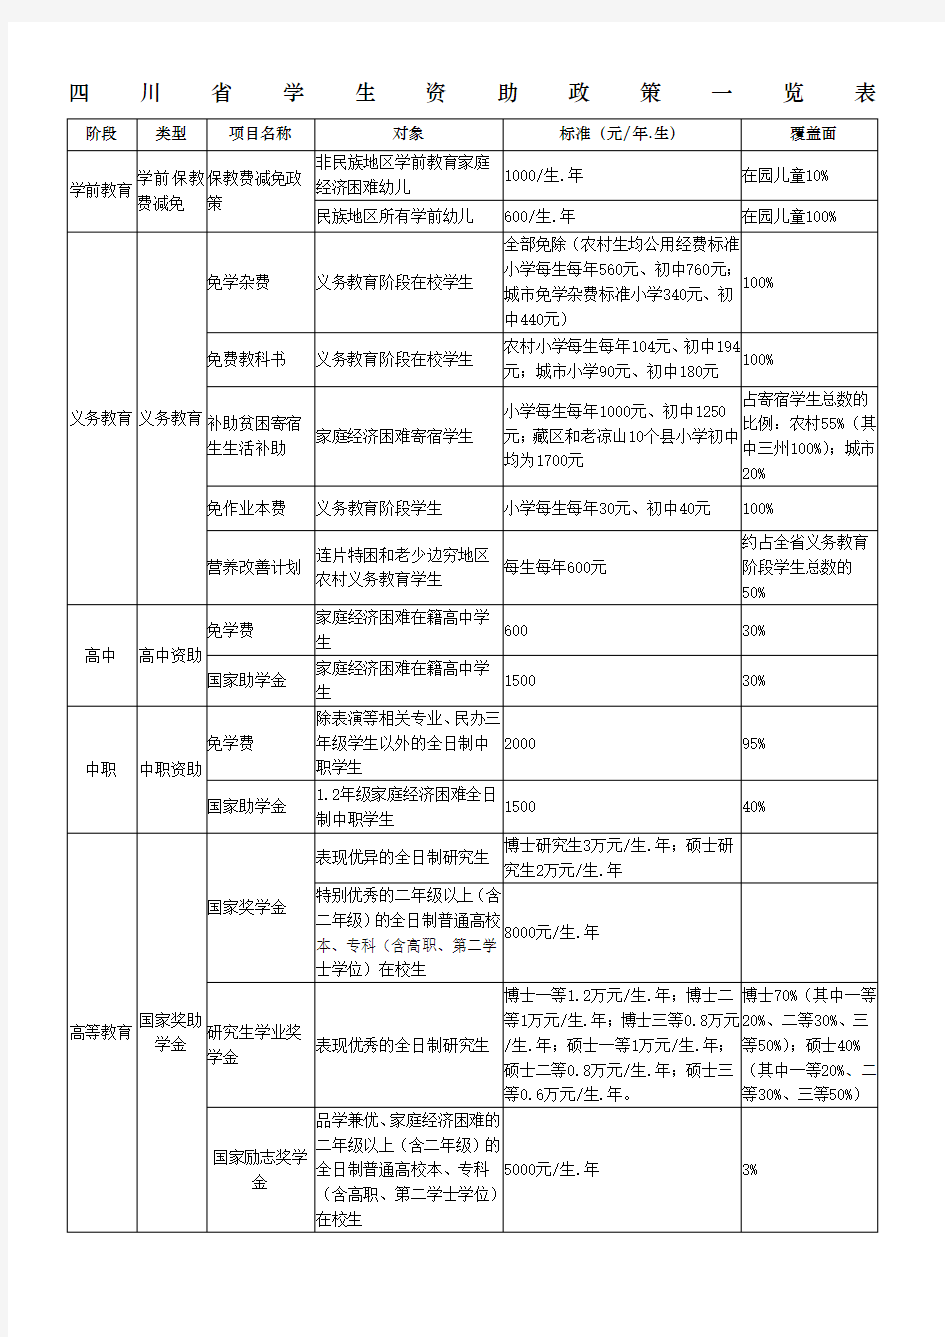 四川省学生资助政策一览表